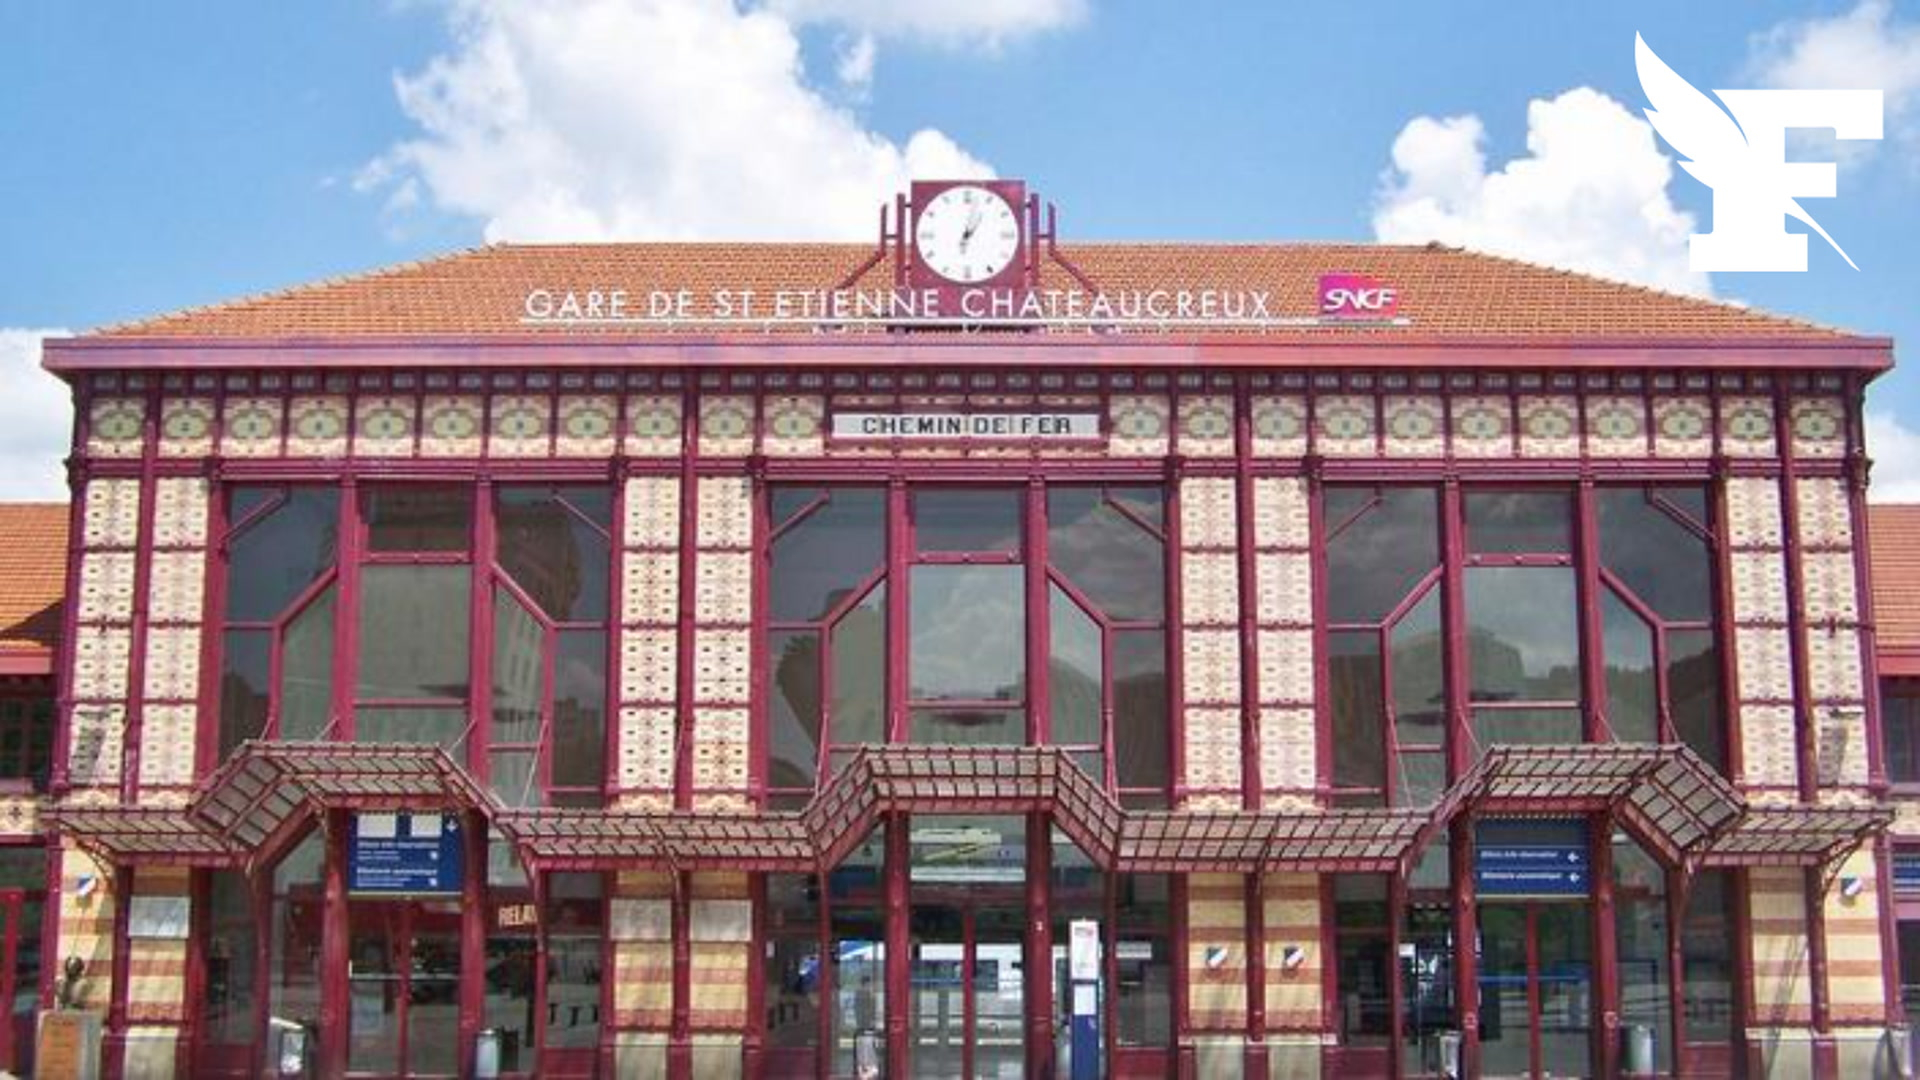 Un agent SNCF est décédé dans la gare de Saint-Étienne Châteaucreux après avoir bu le liquide d'un cubi abandonné